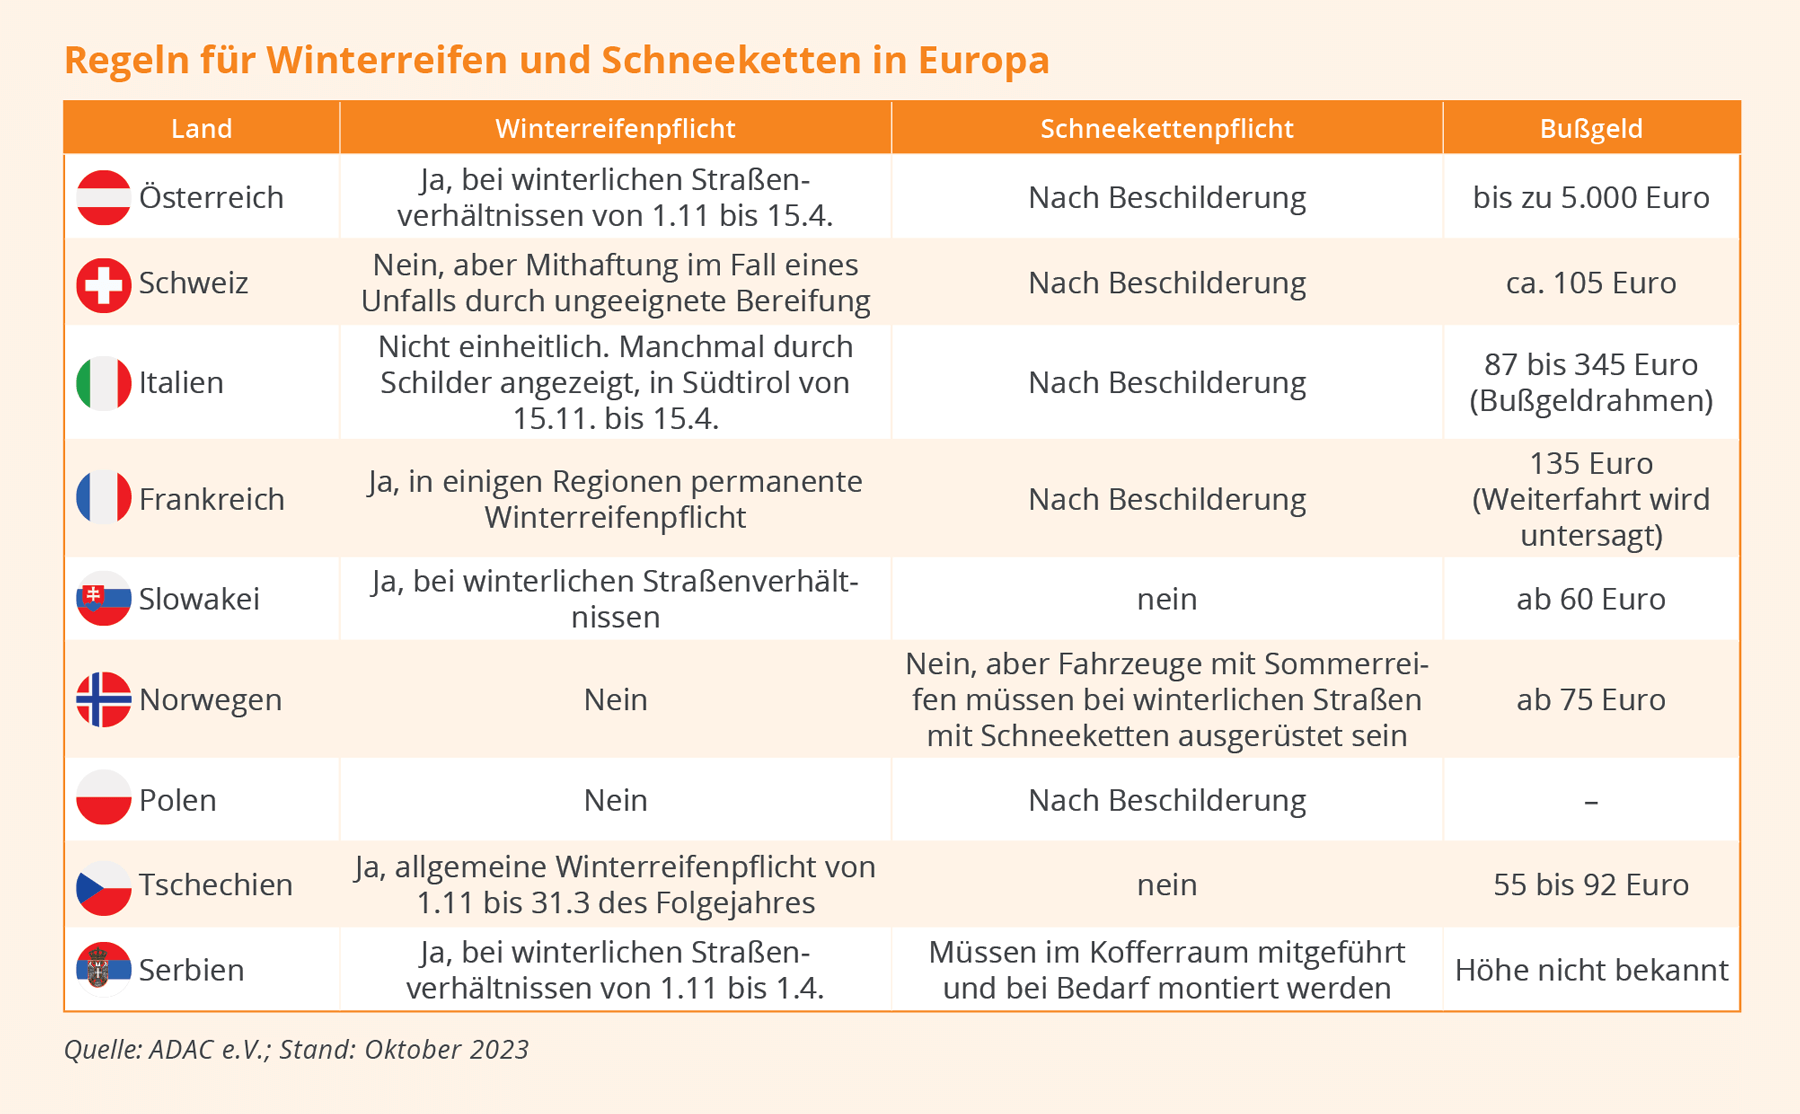 Das sind die Regelungen zur Winterreifenpflicht in Deutschland und Europa